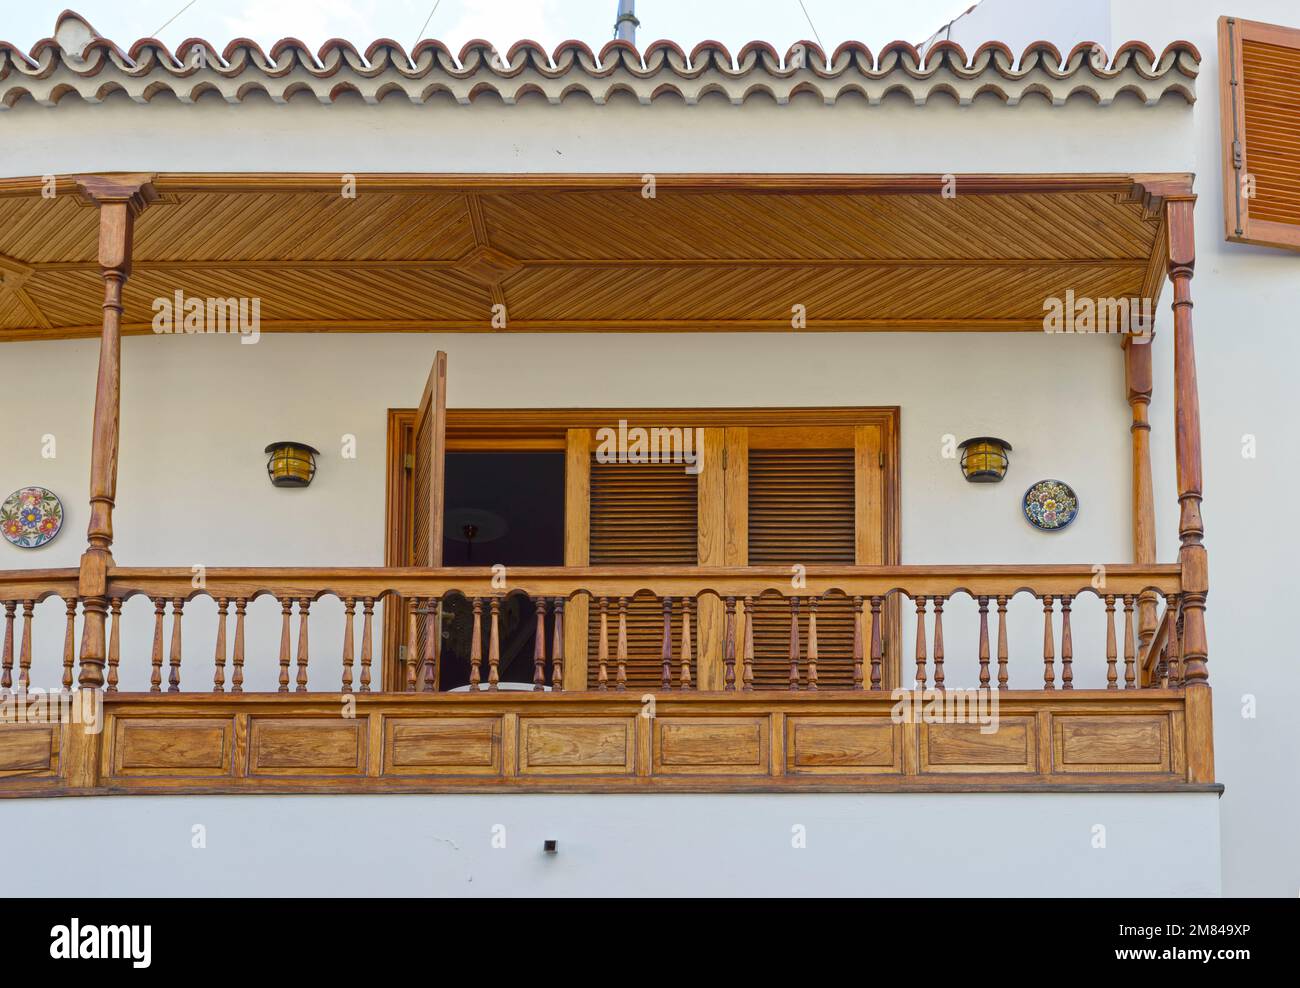 Vergrößerung des Balkons mit Holzdach, Geländer und horizontaler Sonnenblende an Tür- und Fensterläden. Stockfoto